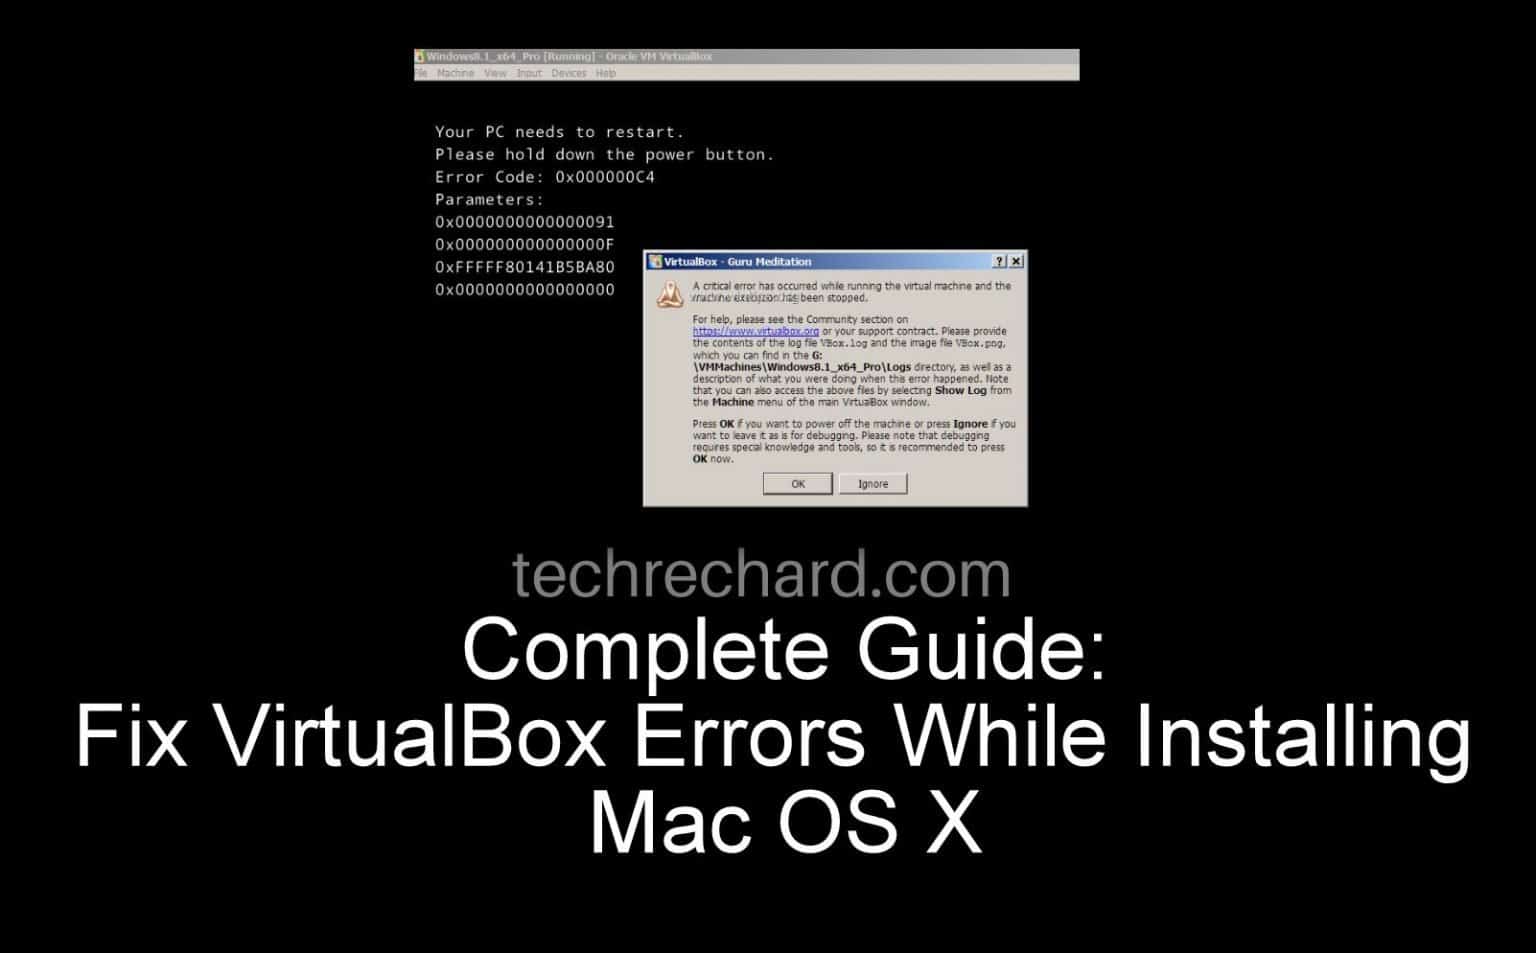 virtualbox for mac os x 10.6.8